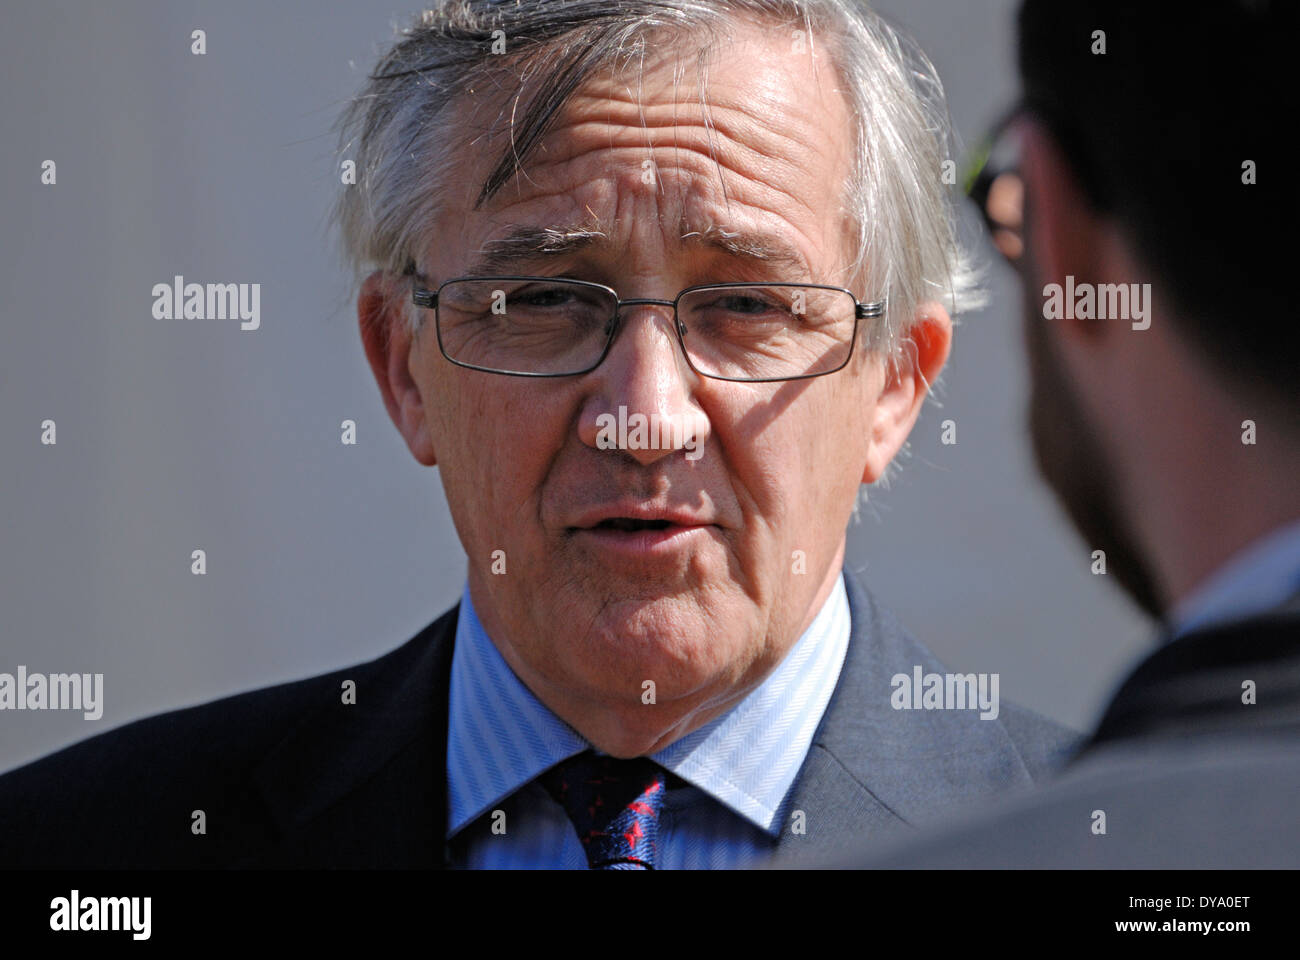 Sir Gerald Howarth MP (konservativ; Aldershot) interviewt außerhalb des Parlaments Stockfoto